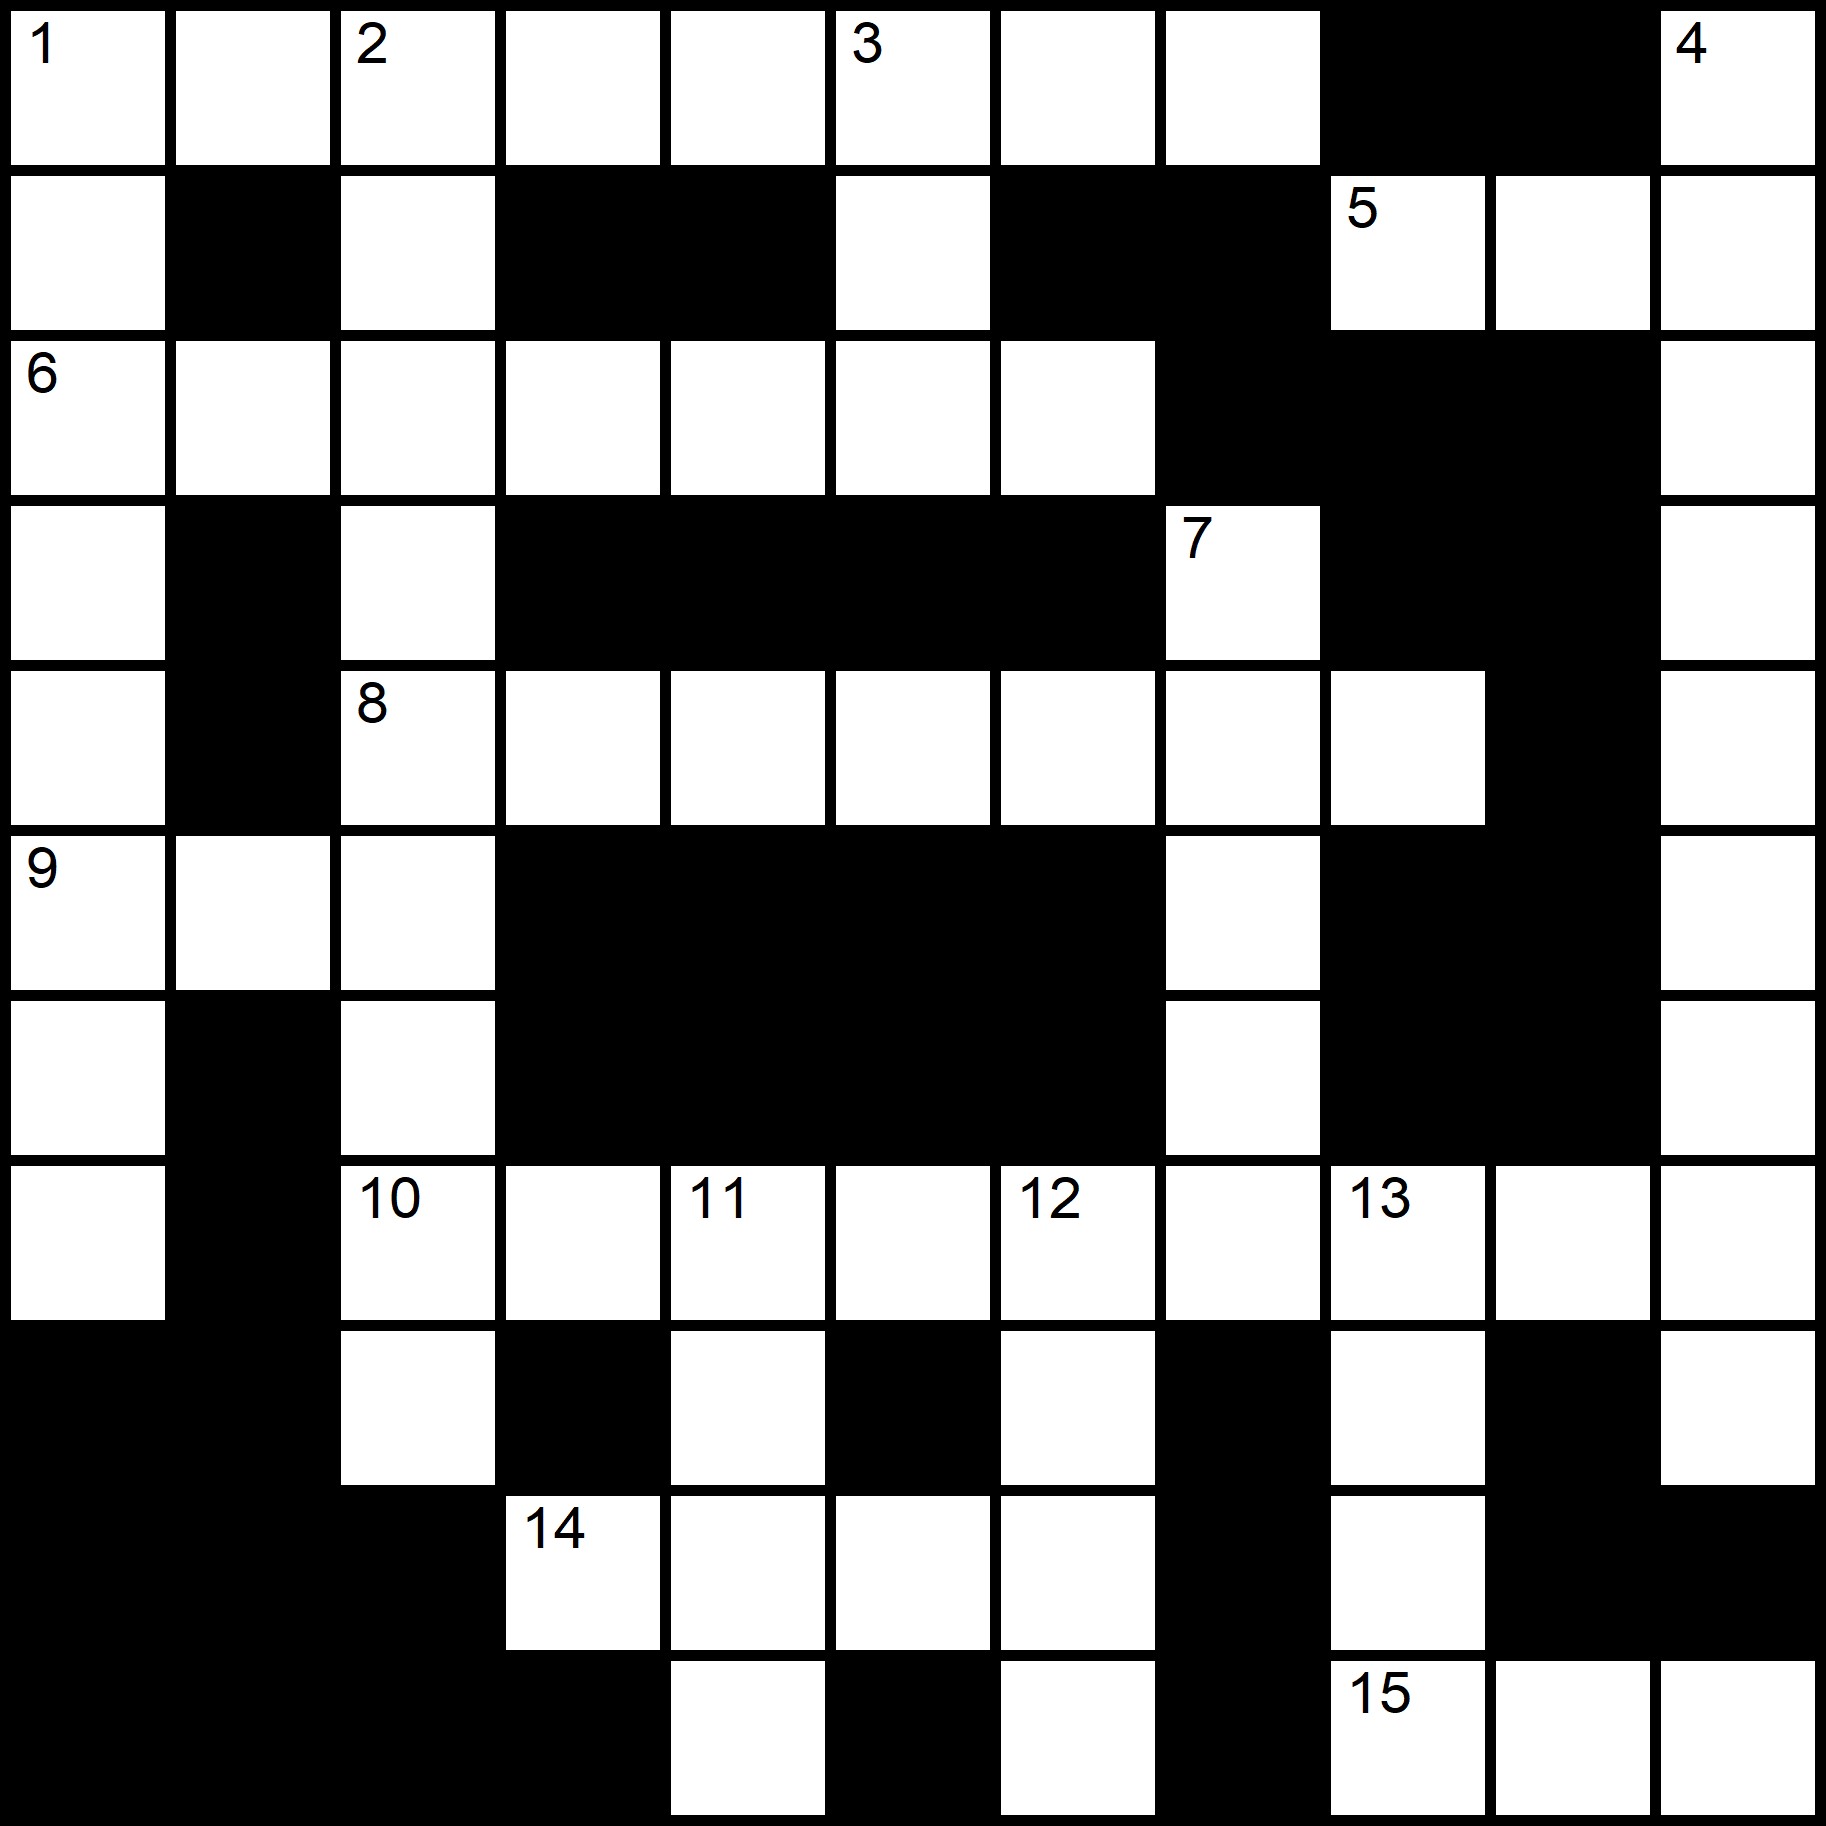 Crosswords Printable Free -
Placidus Flora - Crossword number eighteen